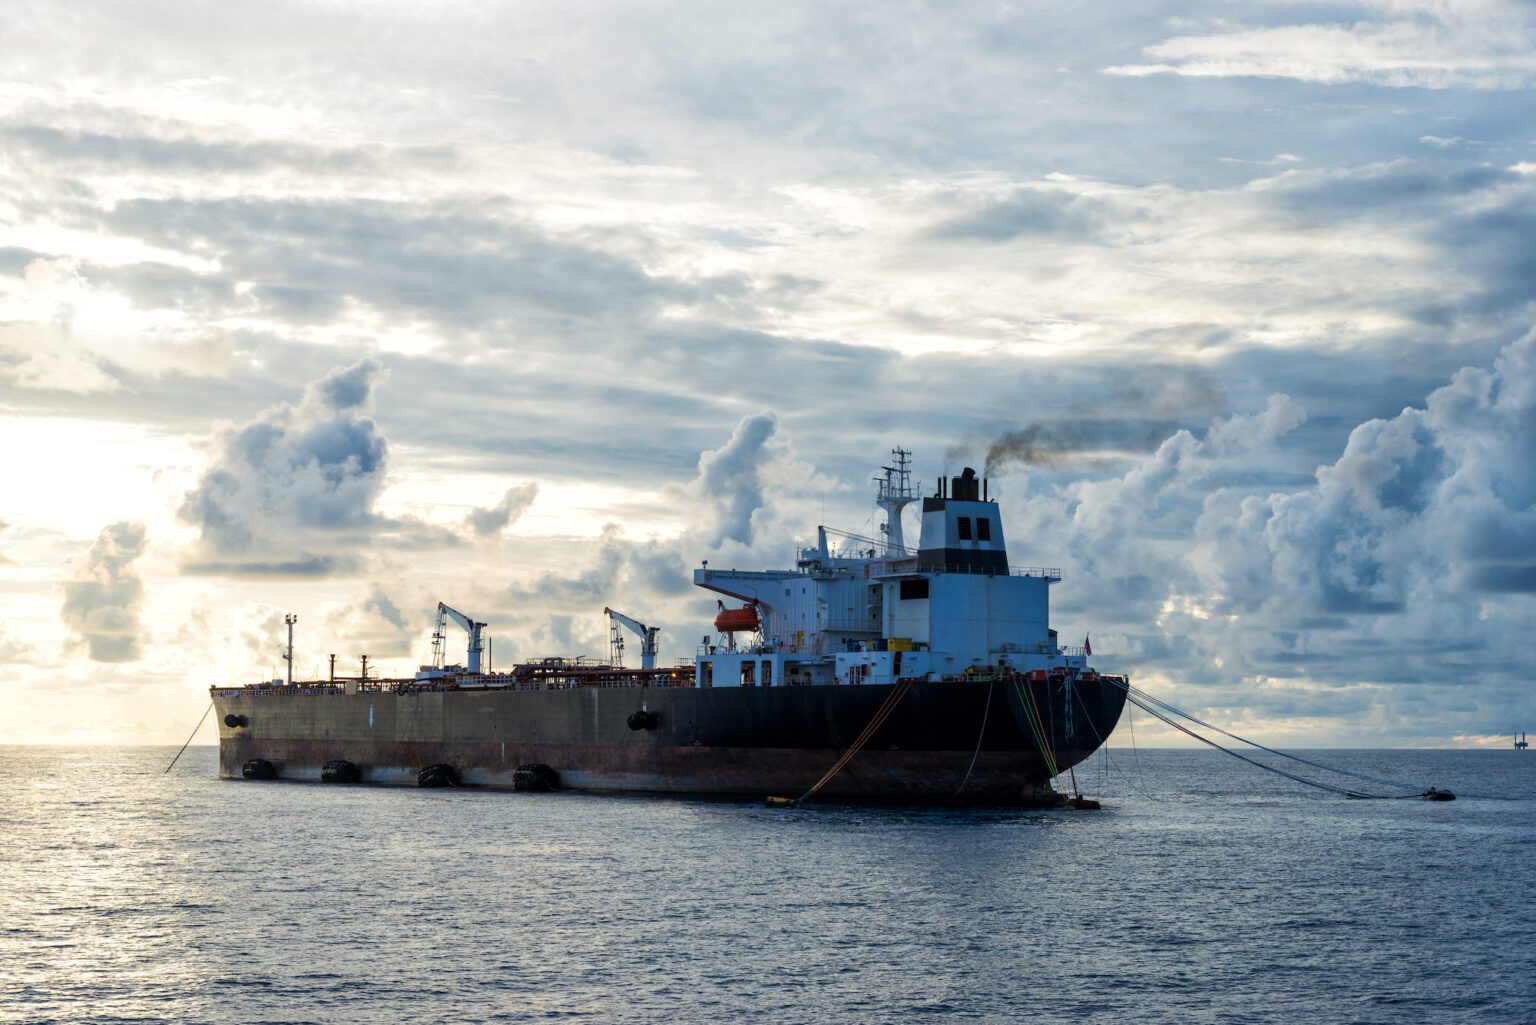 Al Jazeera: The shipment of oil to Europe has decreased